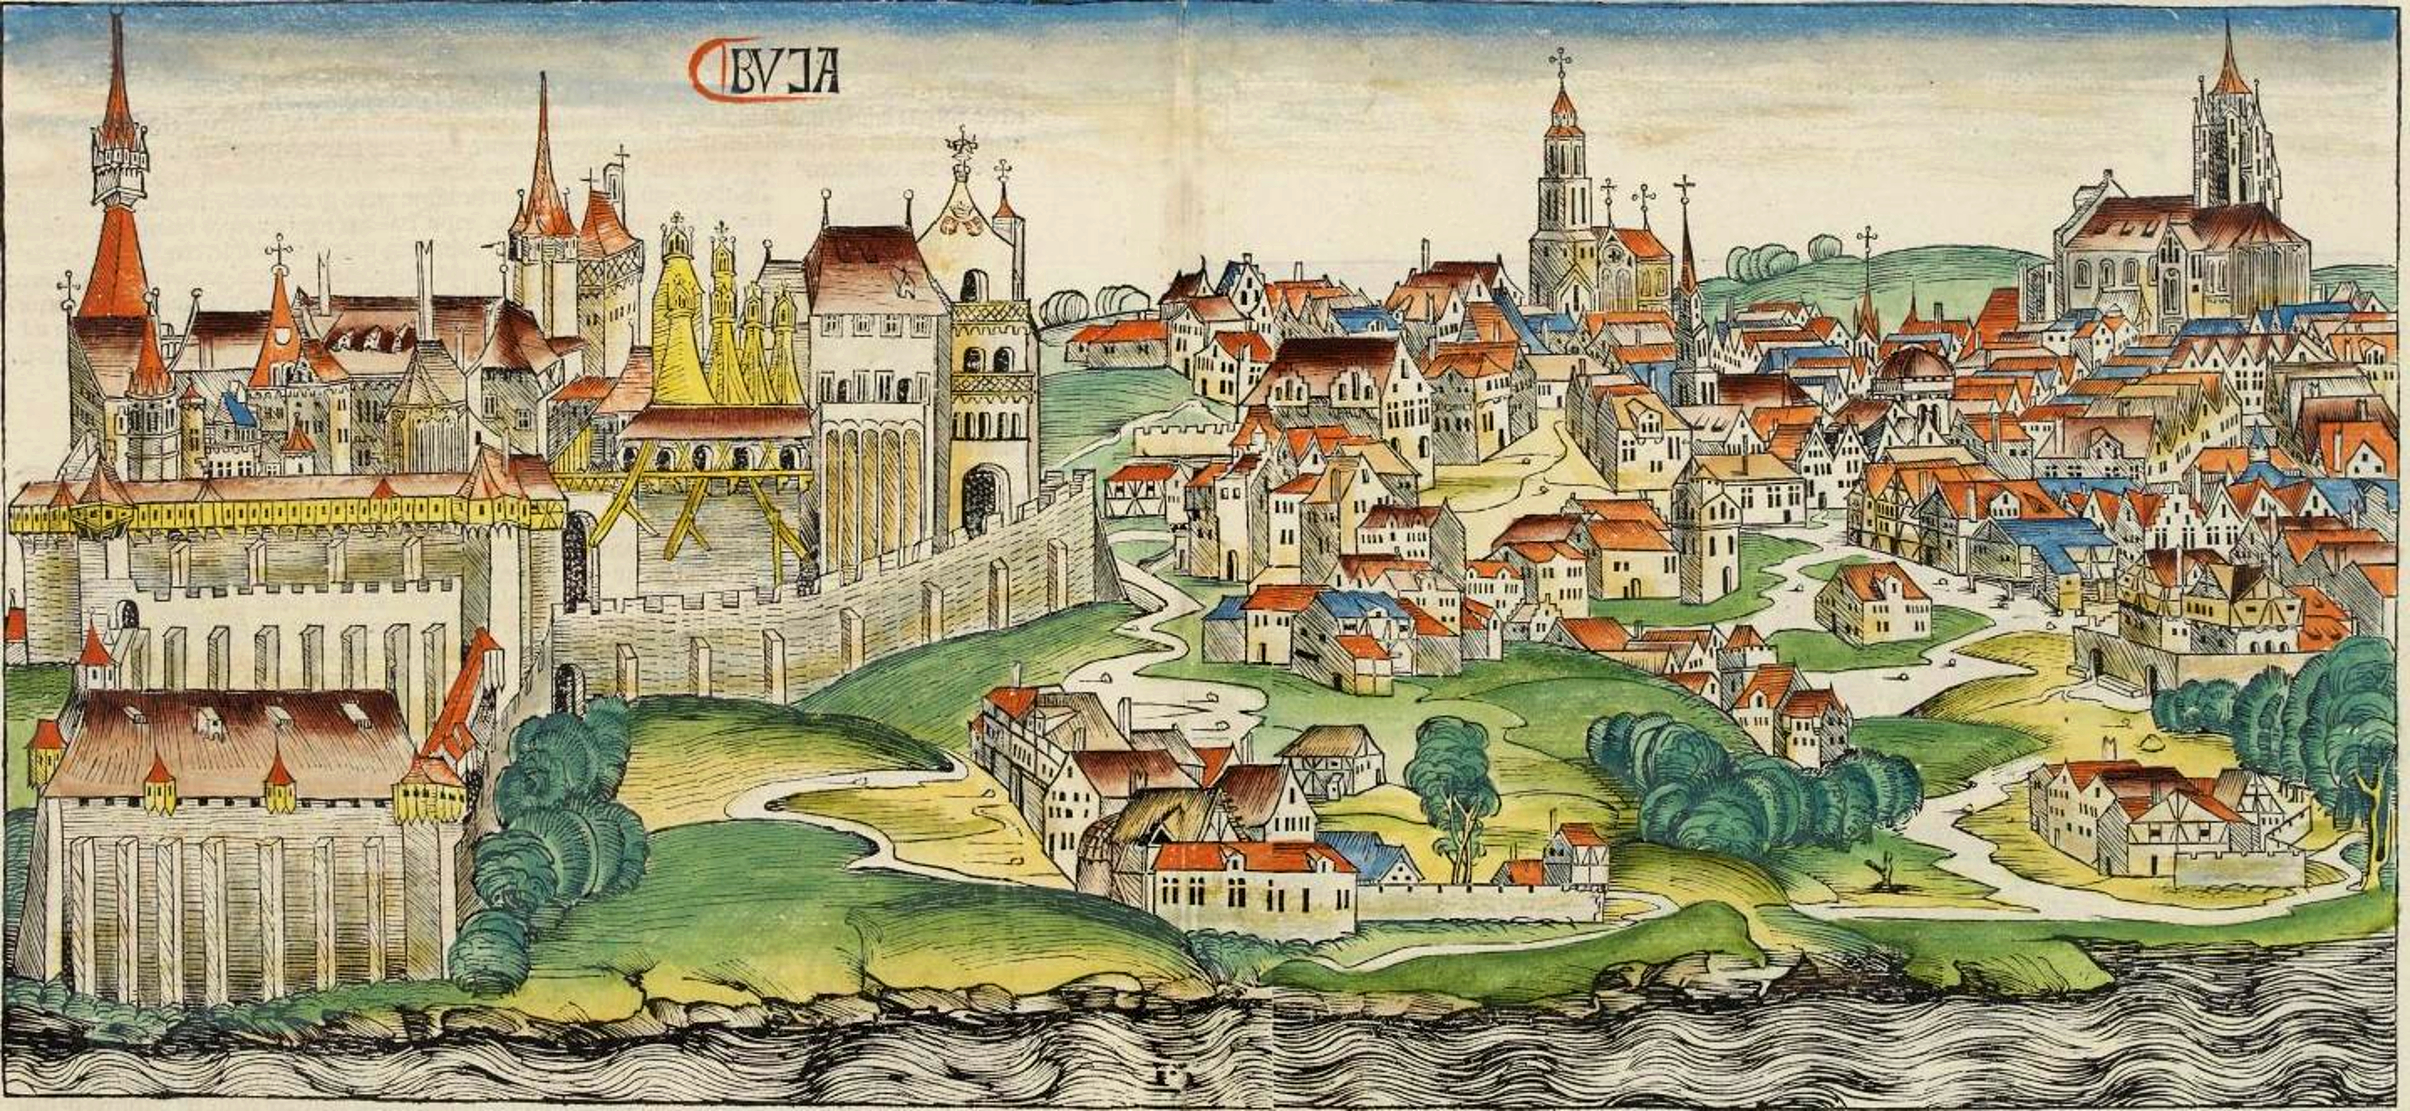 Buda látképe az 1493-as nürnbergi krónikában (vagy Schedel-világkrónikában)